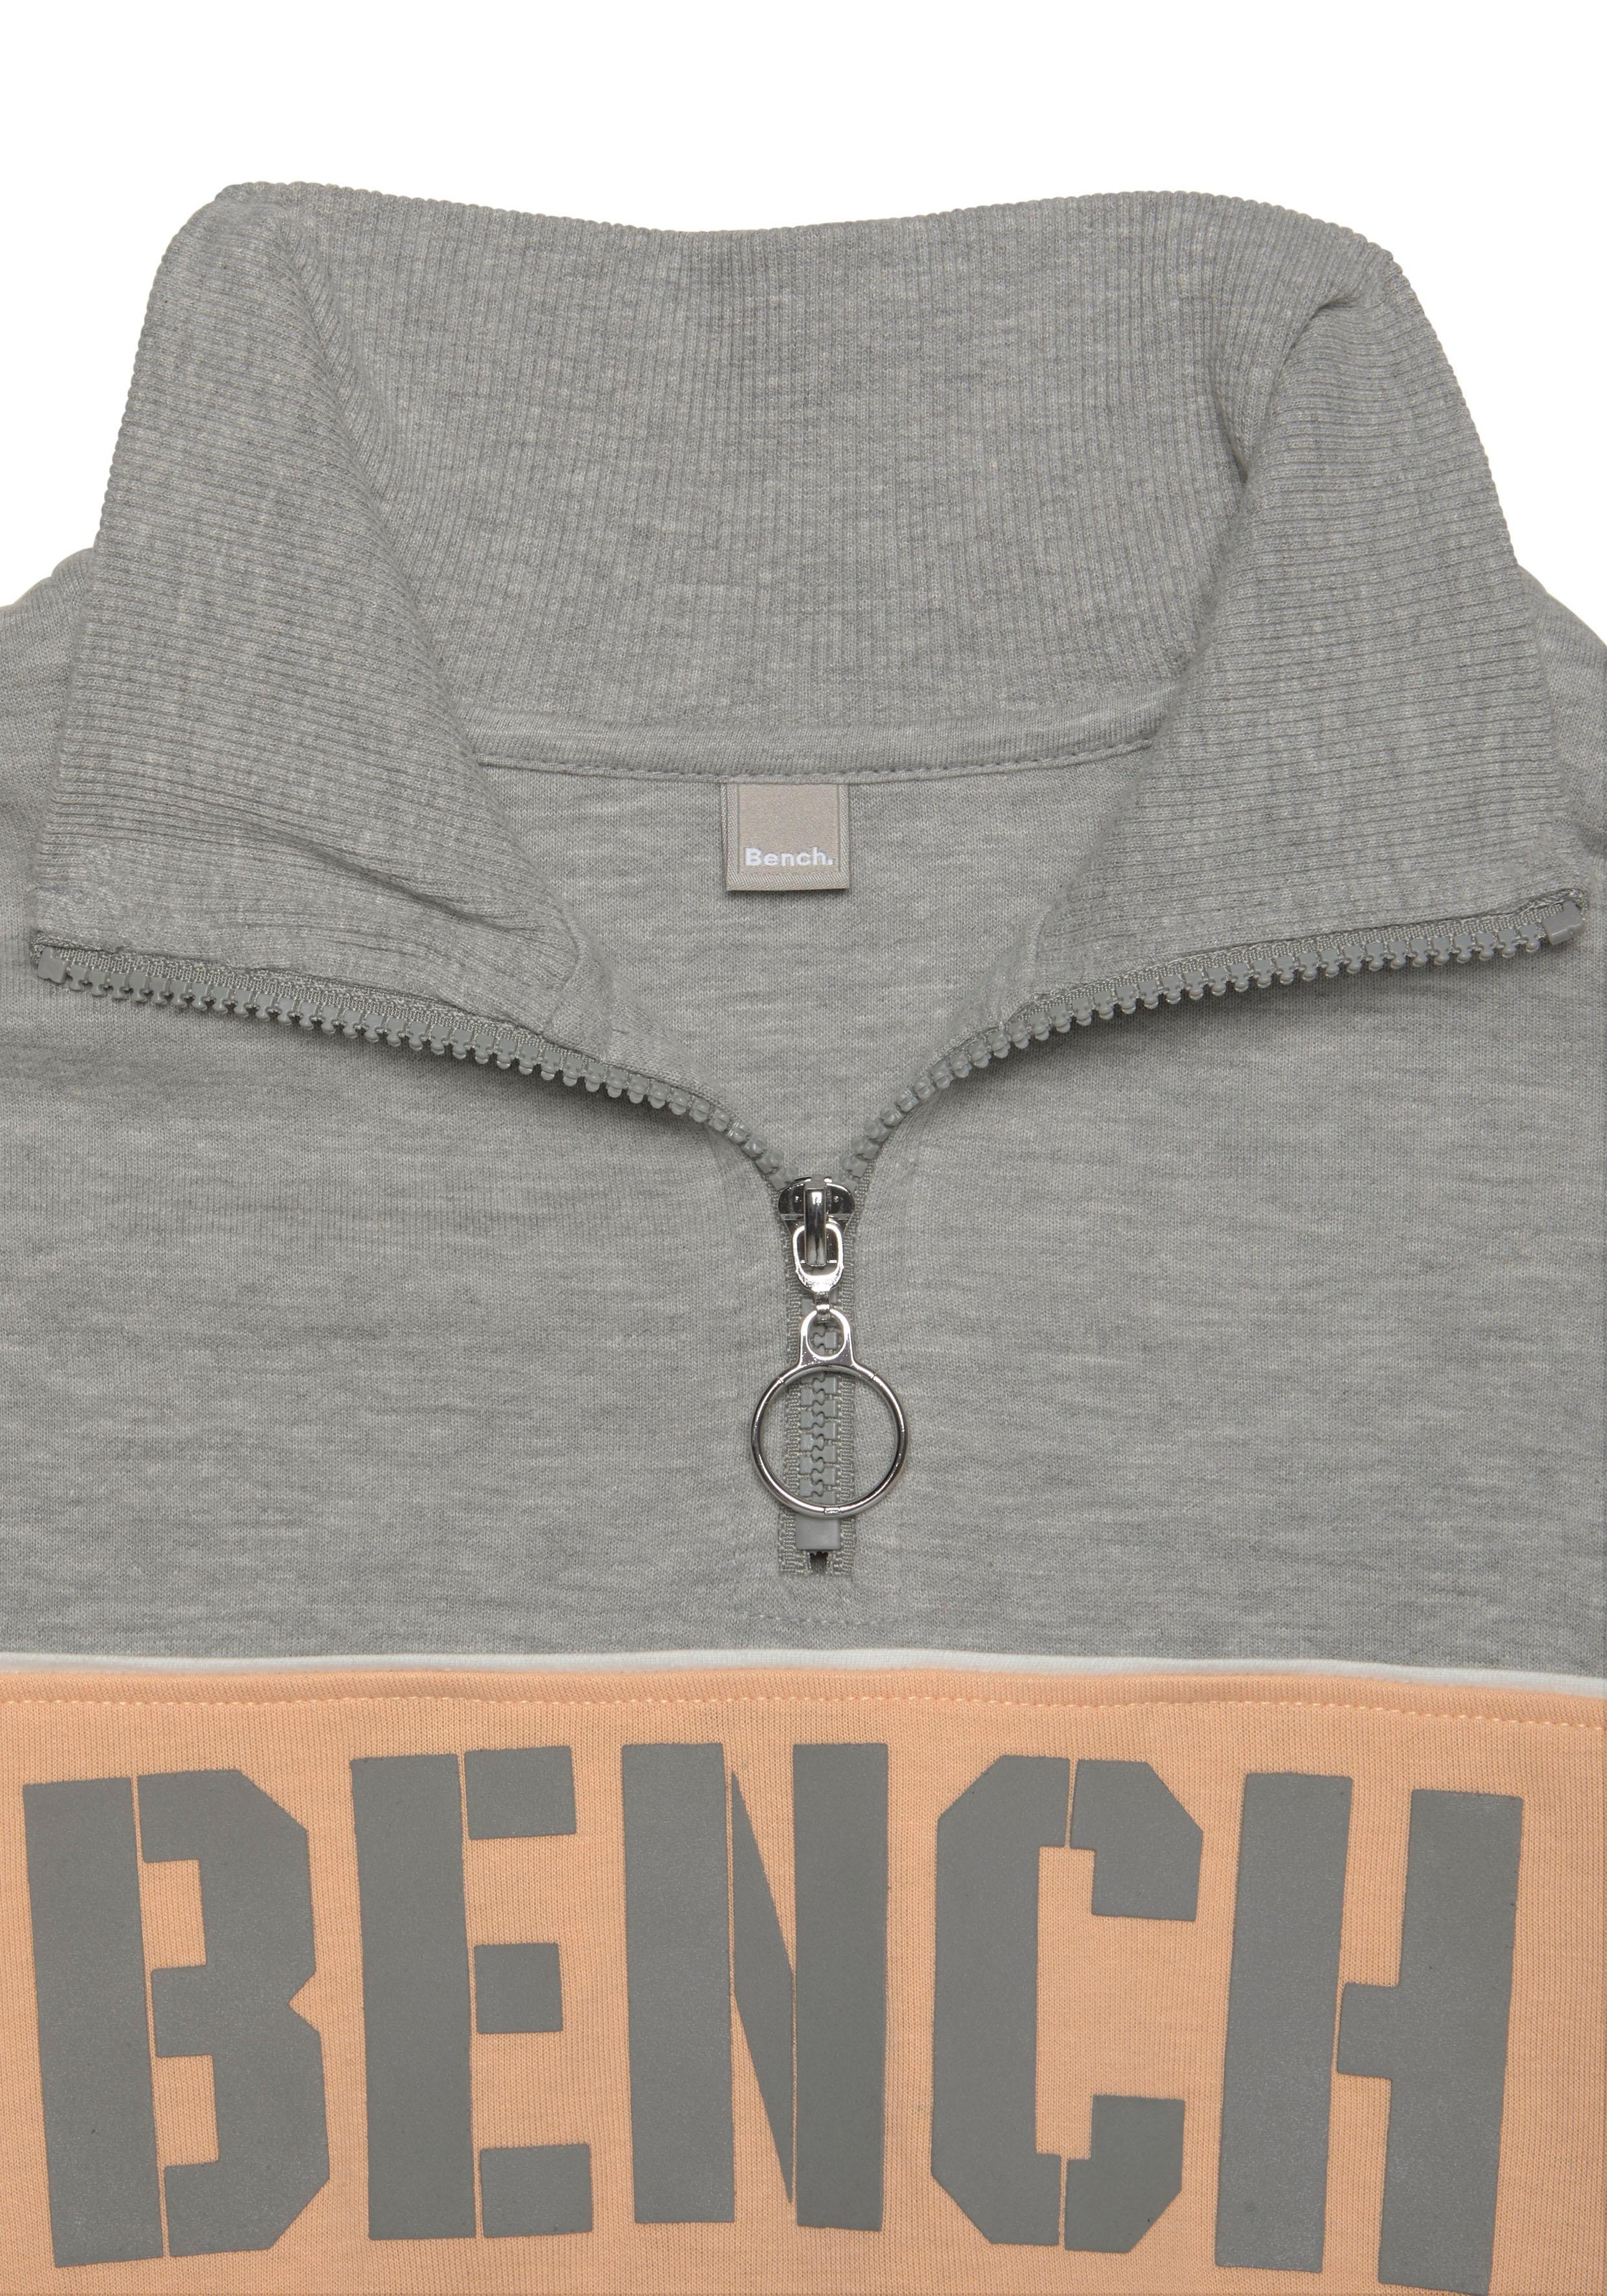 bei Bench. Loungeanzug im Logoprint, Color-Blocking mit Design Sweatshirt, OTTO kaufen